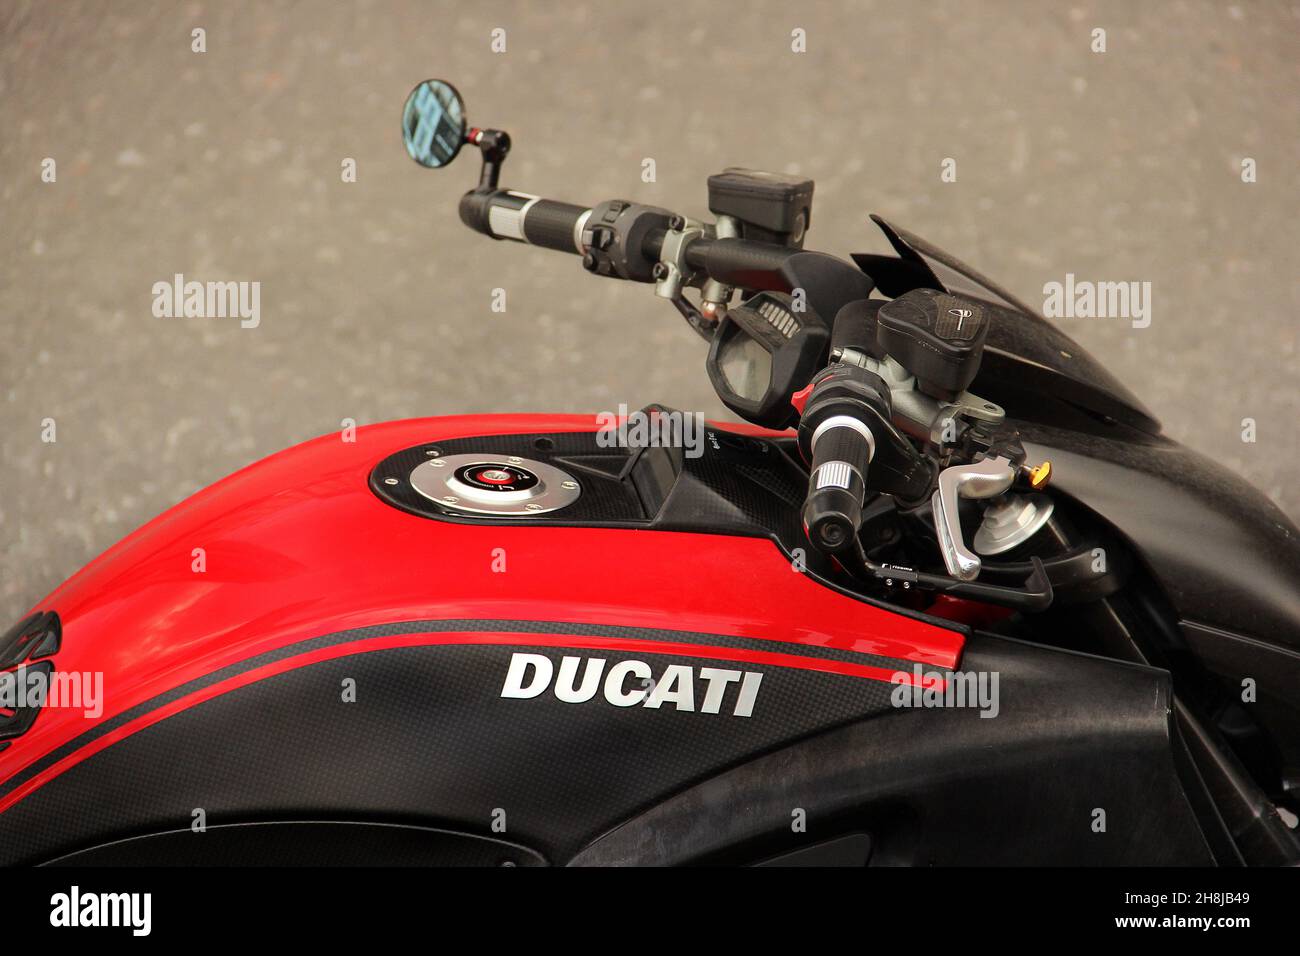 Kiev, Ukraine - 3 mai 2019: Partie d'une moto Ducati dans la ville Banque D'Images